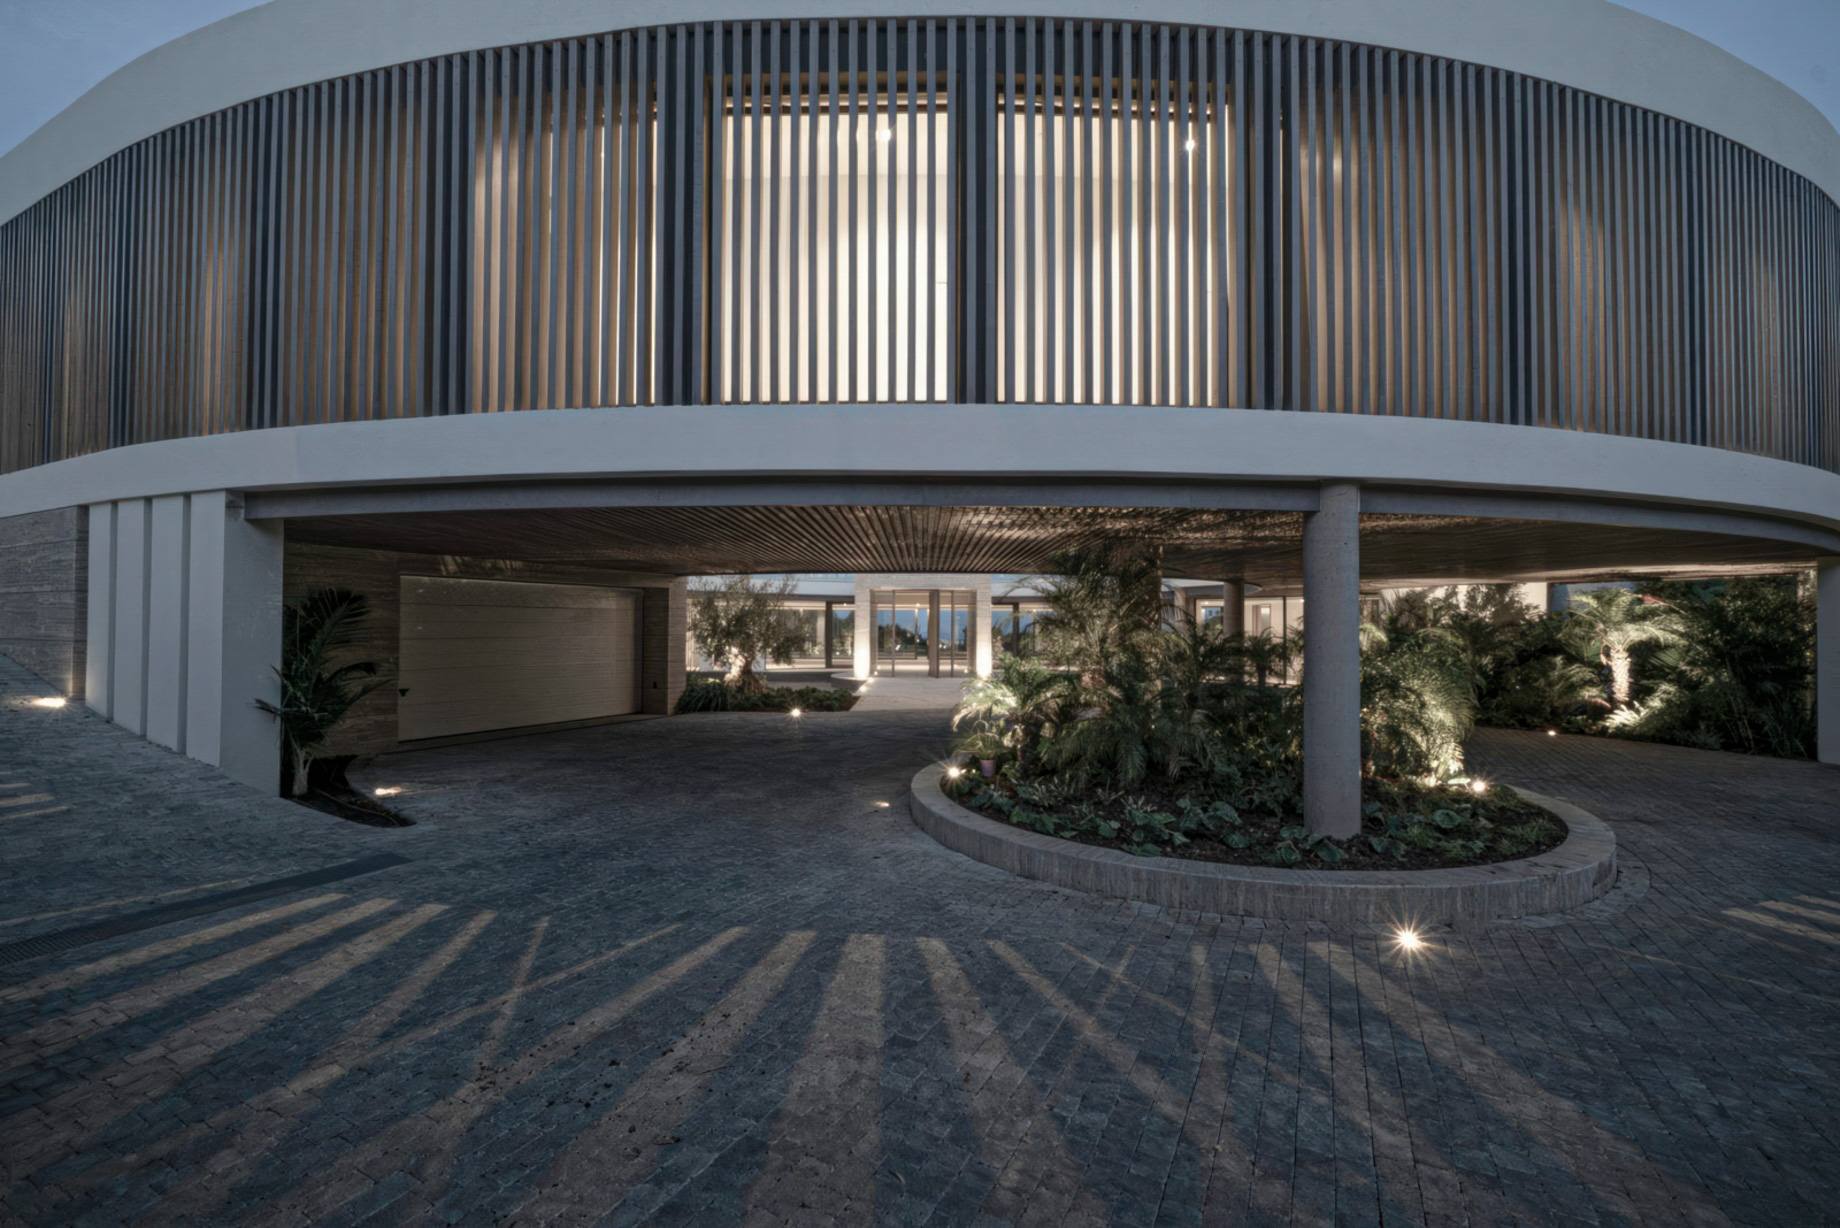 Villa VELA Modern Contemporary Residence – El Mirador, La Reserva Sotogrande, Spain – 23